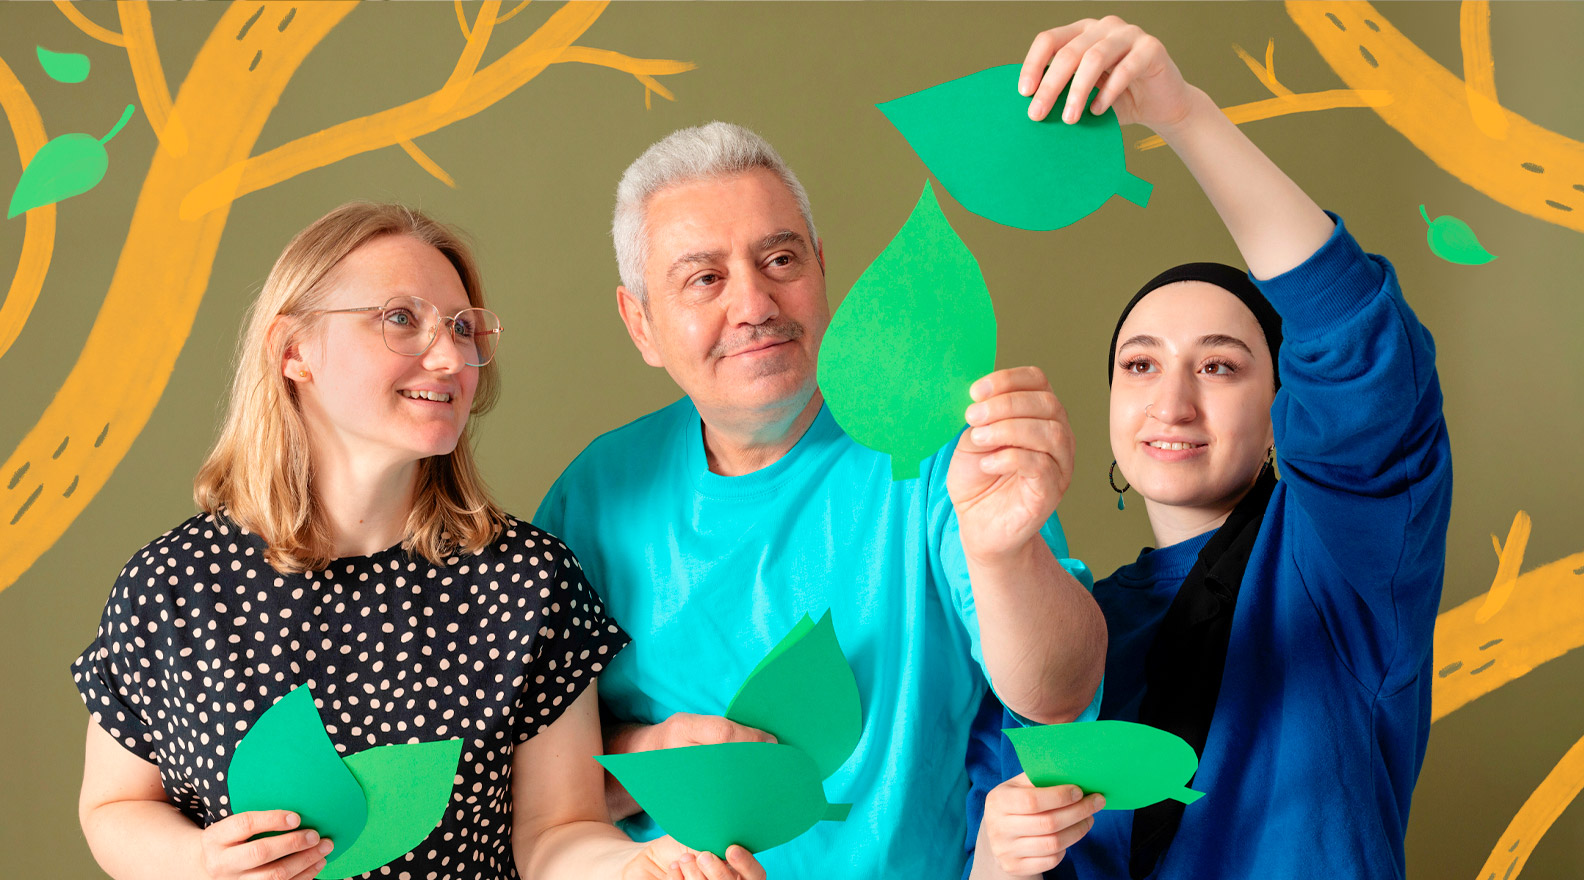 Kolme henkilöä asettelee ilmaan paperista leikattuja vihreitä puun lehtiä. Kuvaan on lisätty puun oksia piirroskuvituksen muodossa.